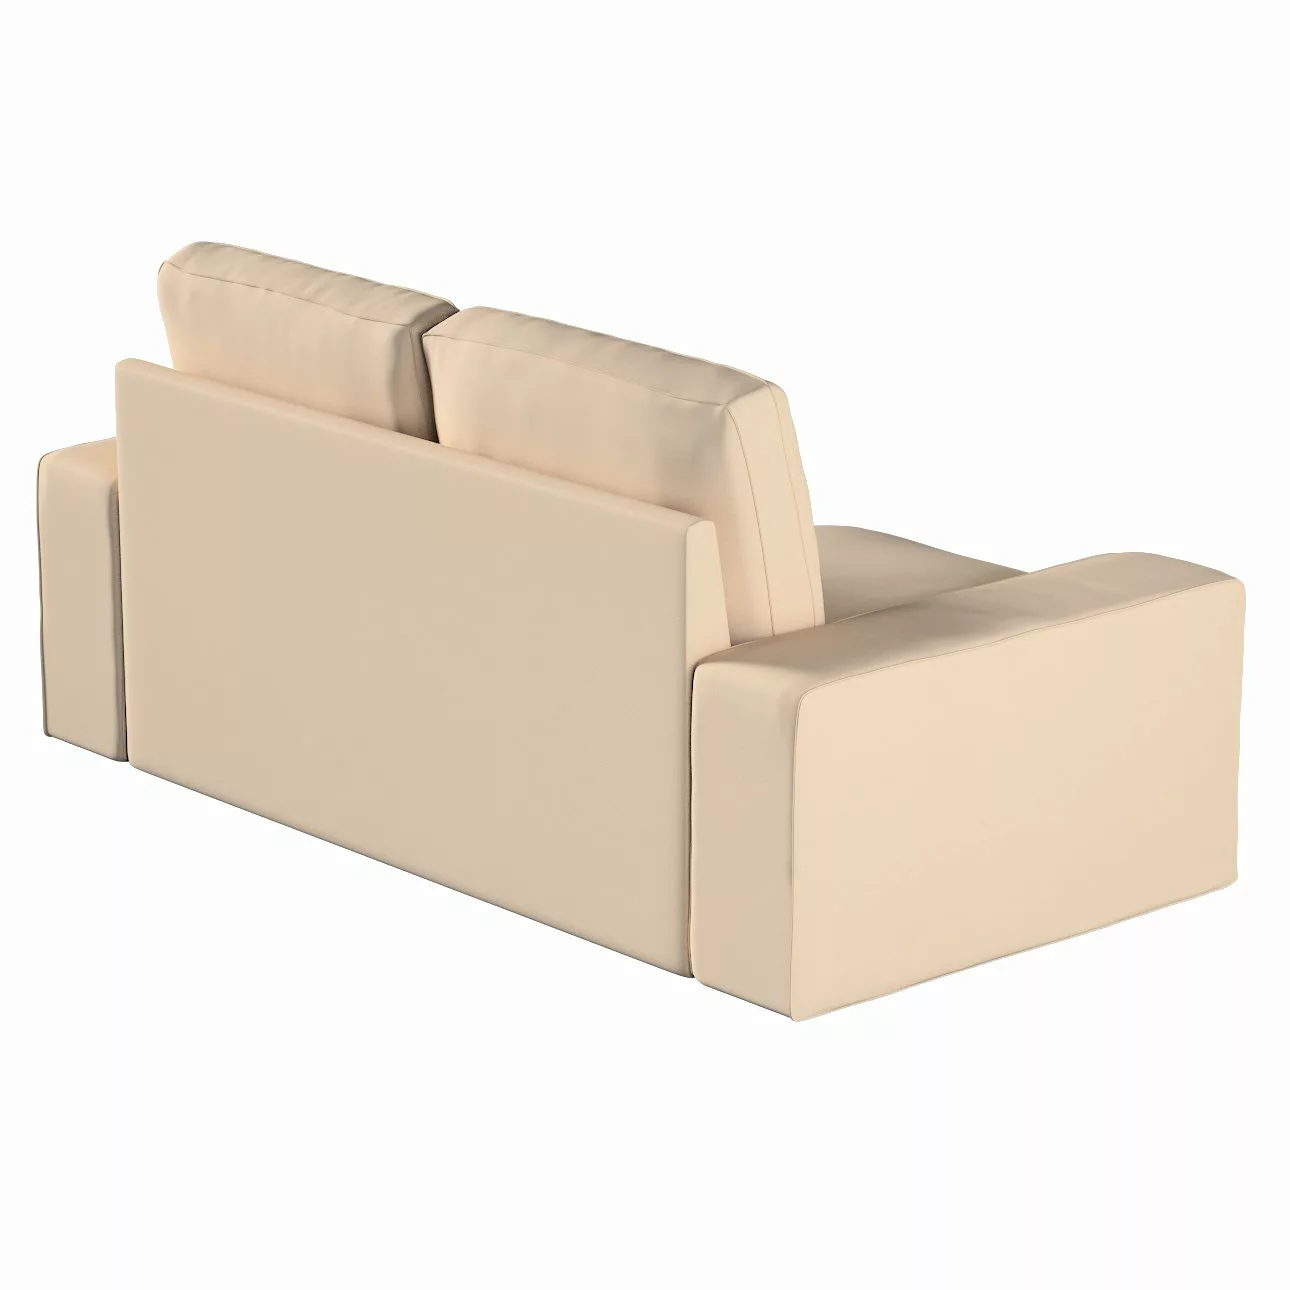 Bezug für Kivik 2-Sitzer Sofa, creme-beige, Bezug für Sofa Kivik 2-Sitzer, günstig online kaufen